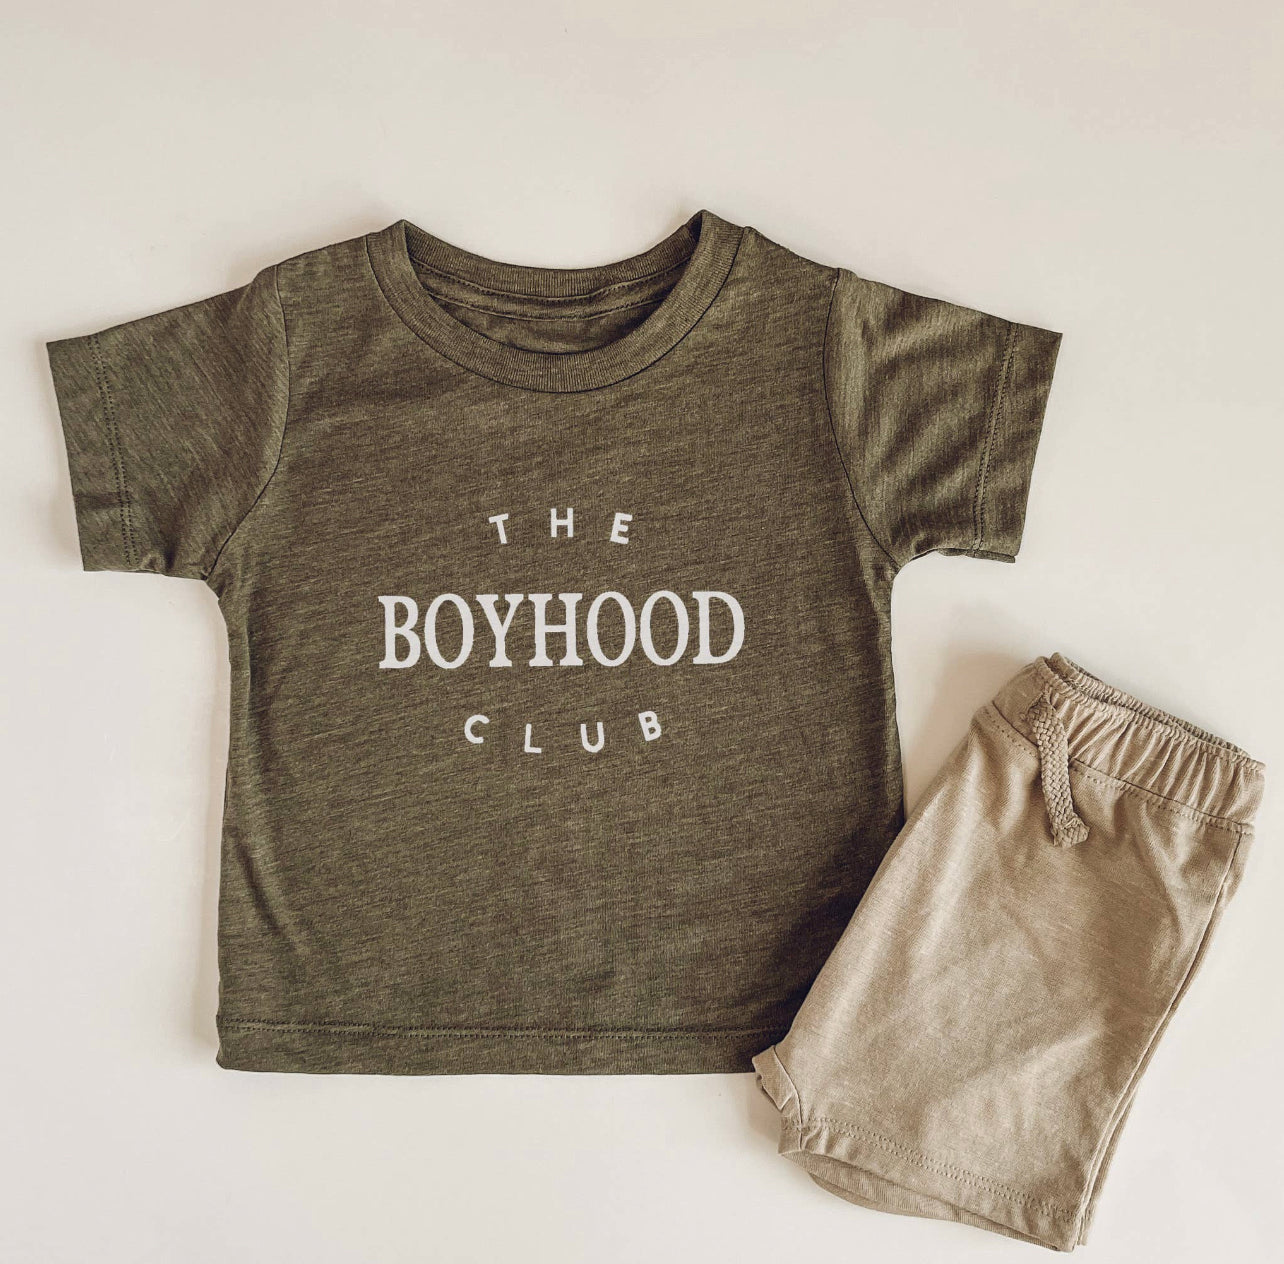 The Boyhood Club tee